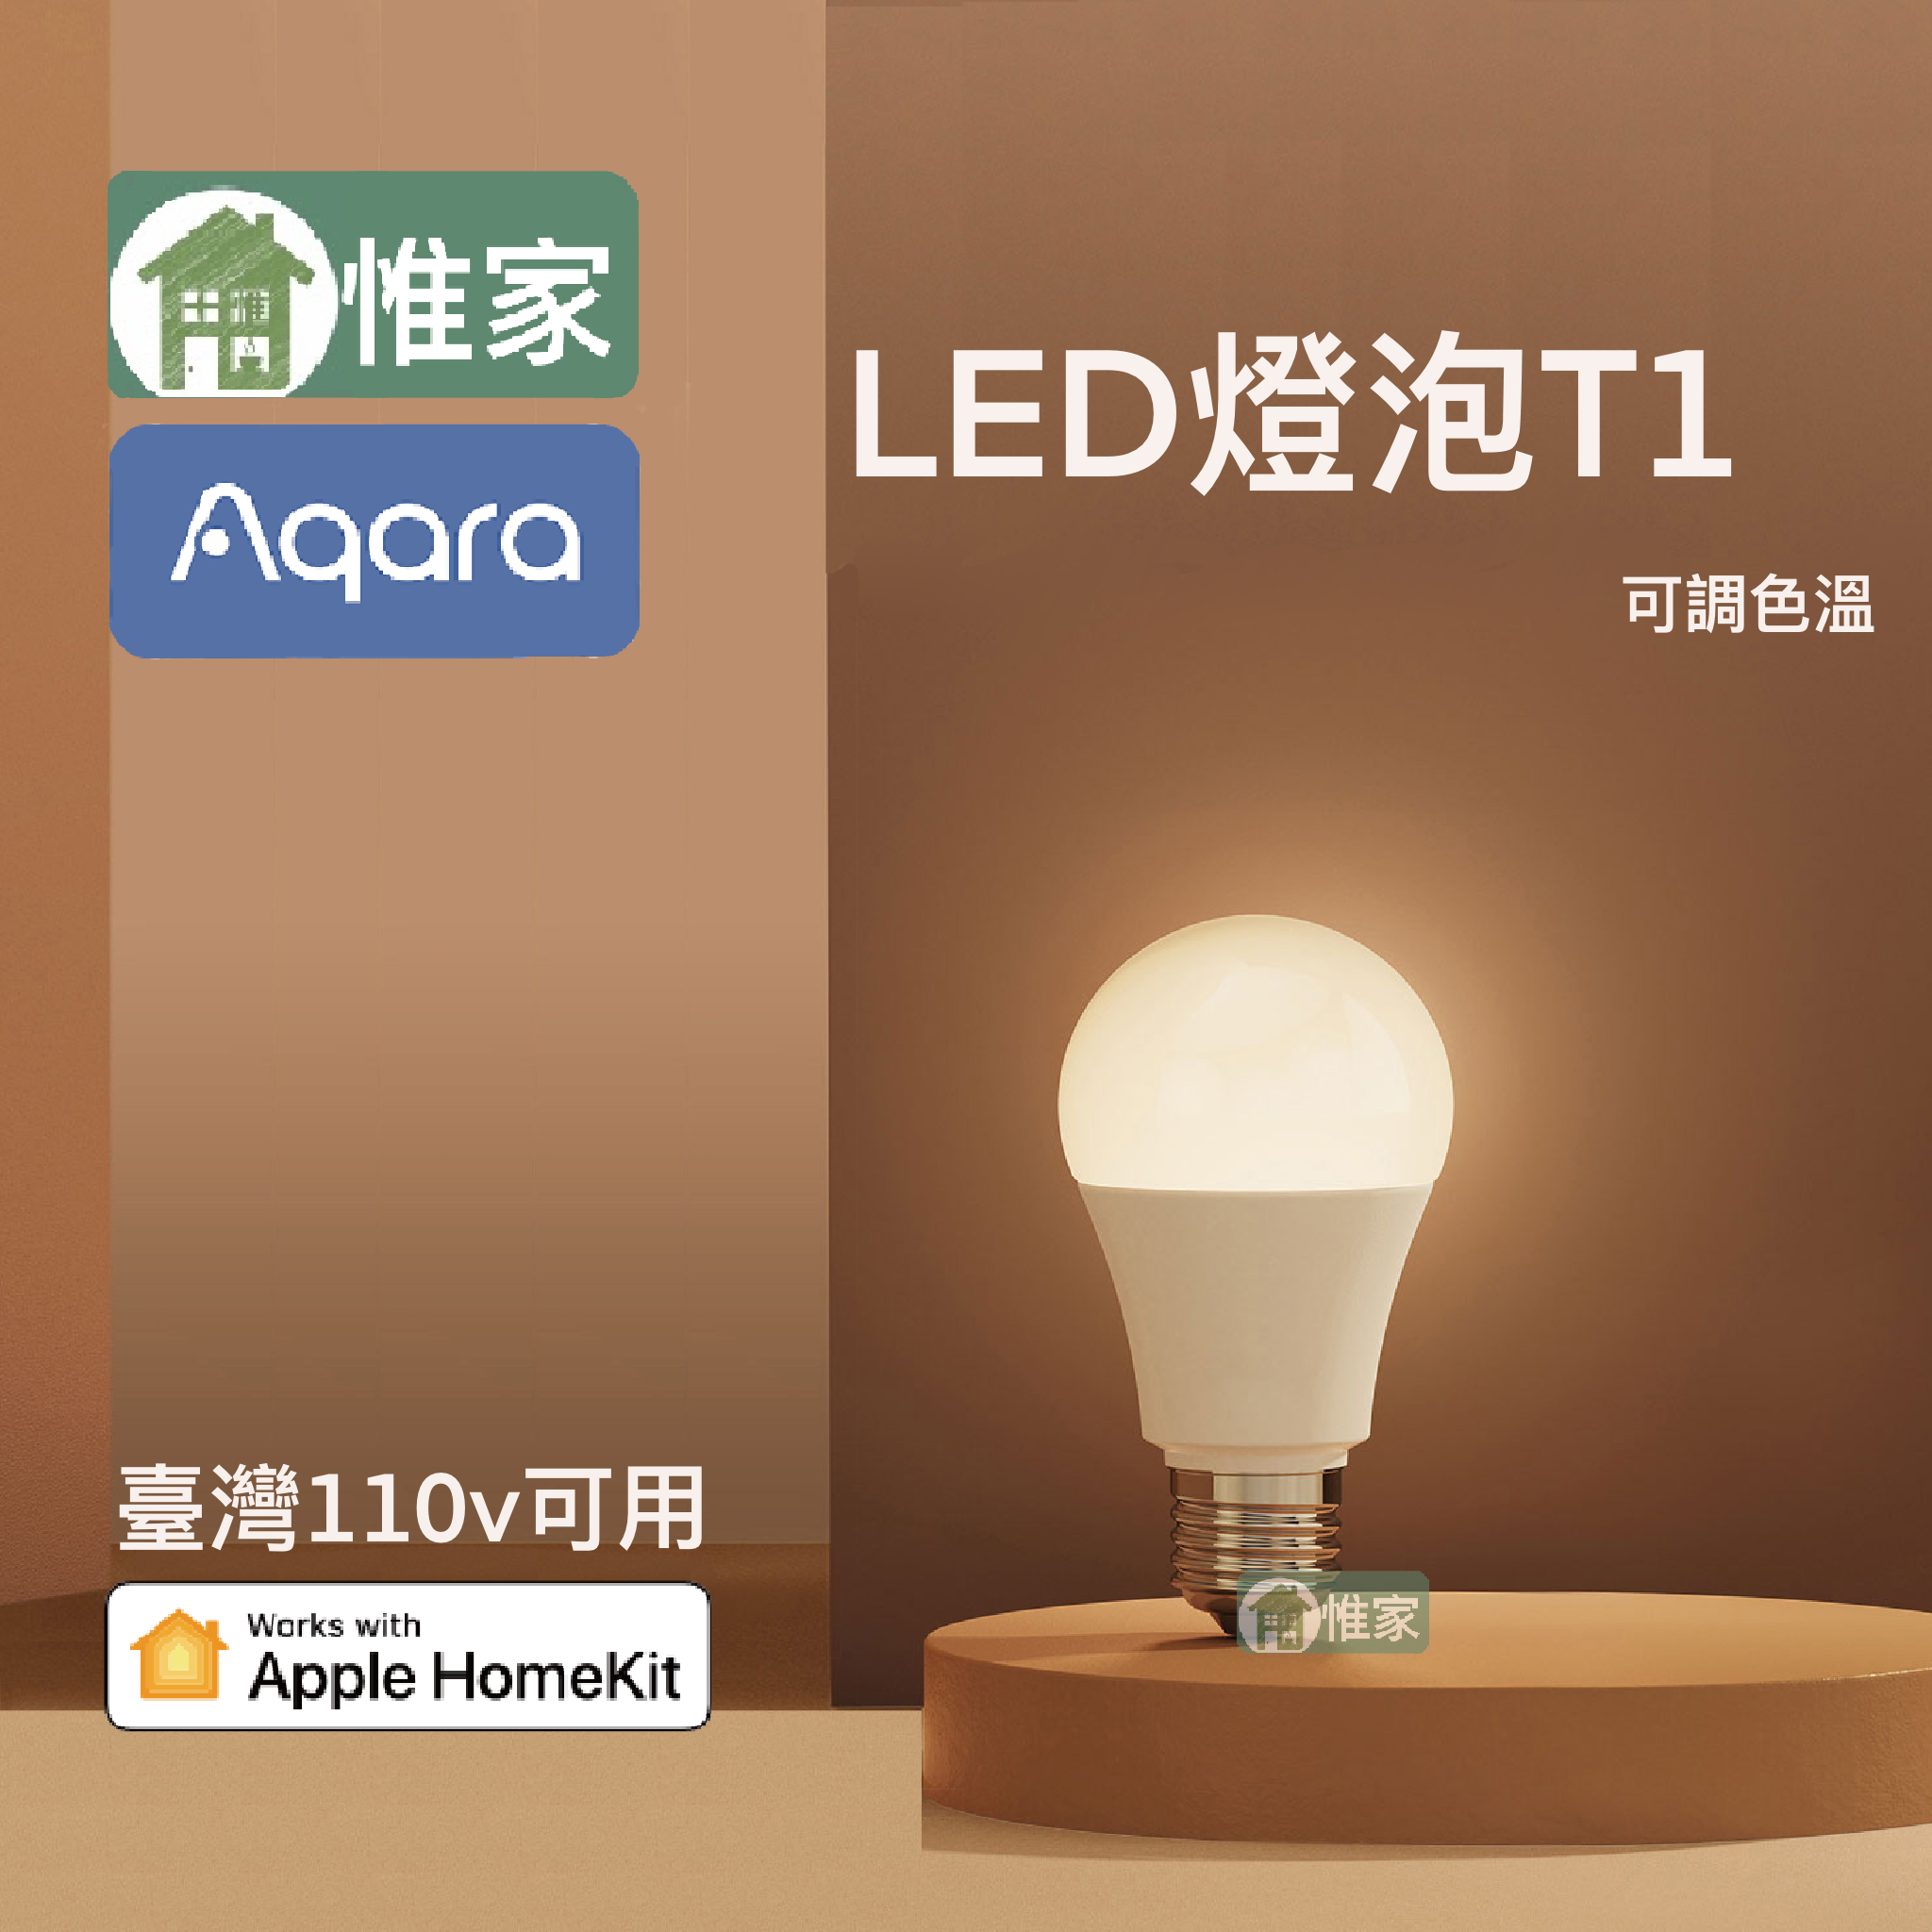 惟家首賣（綠米台北公司現貨）_ Aqara雙色溫 LED 燈泡T1， homekit全適應燈泡 點亮您的溫馨生活～